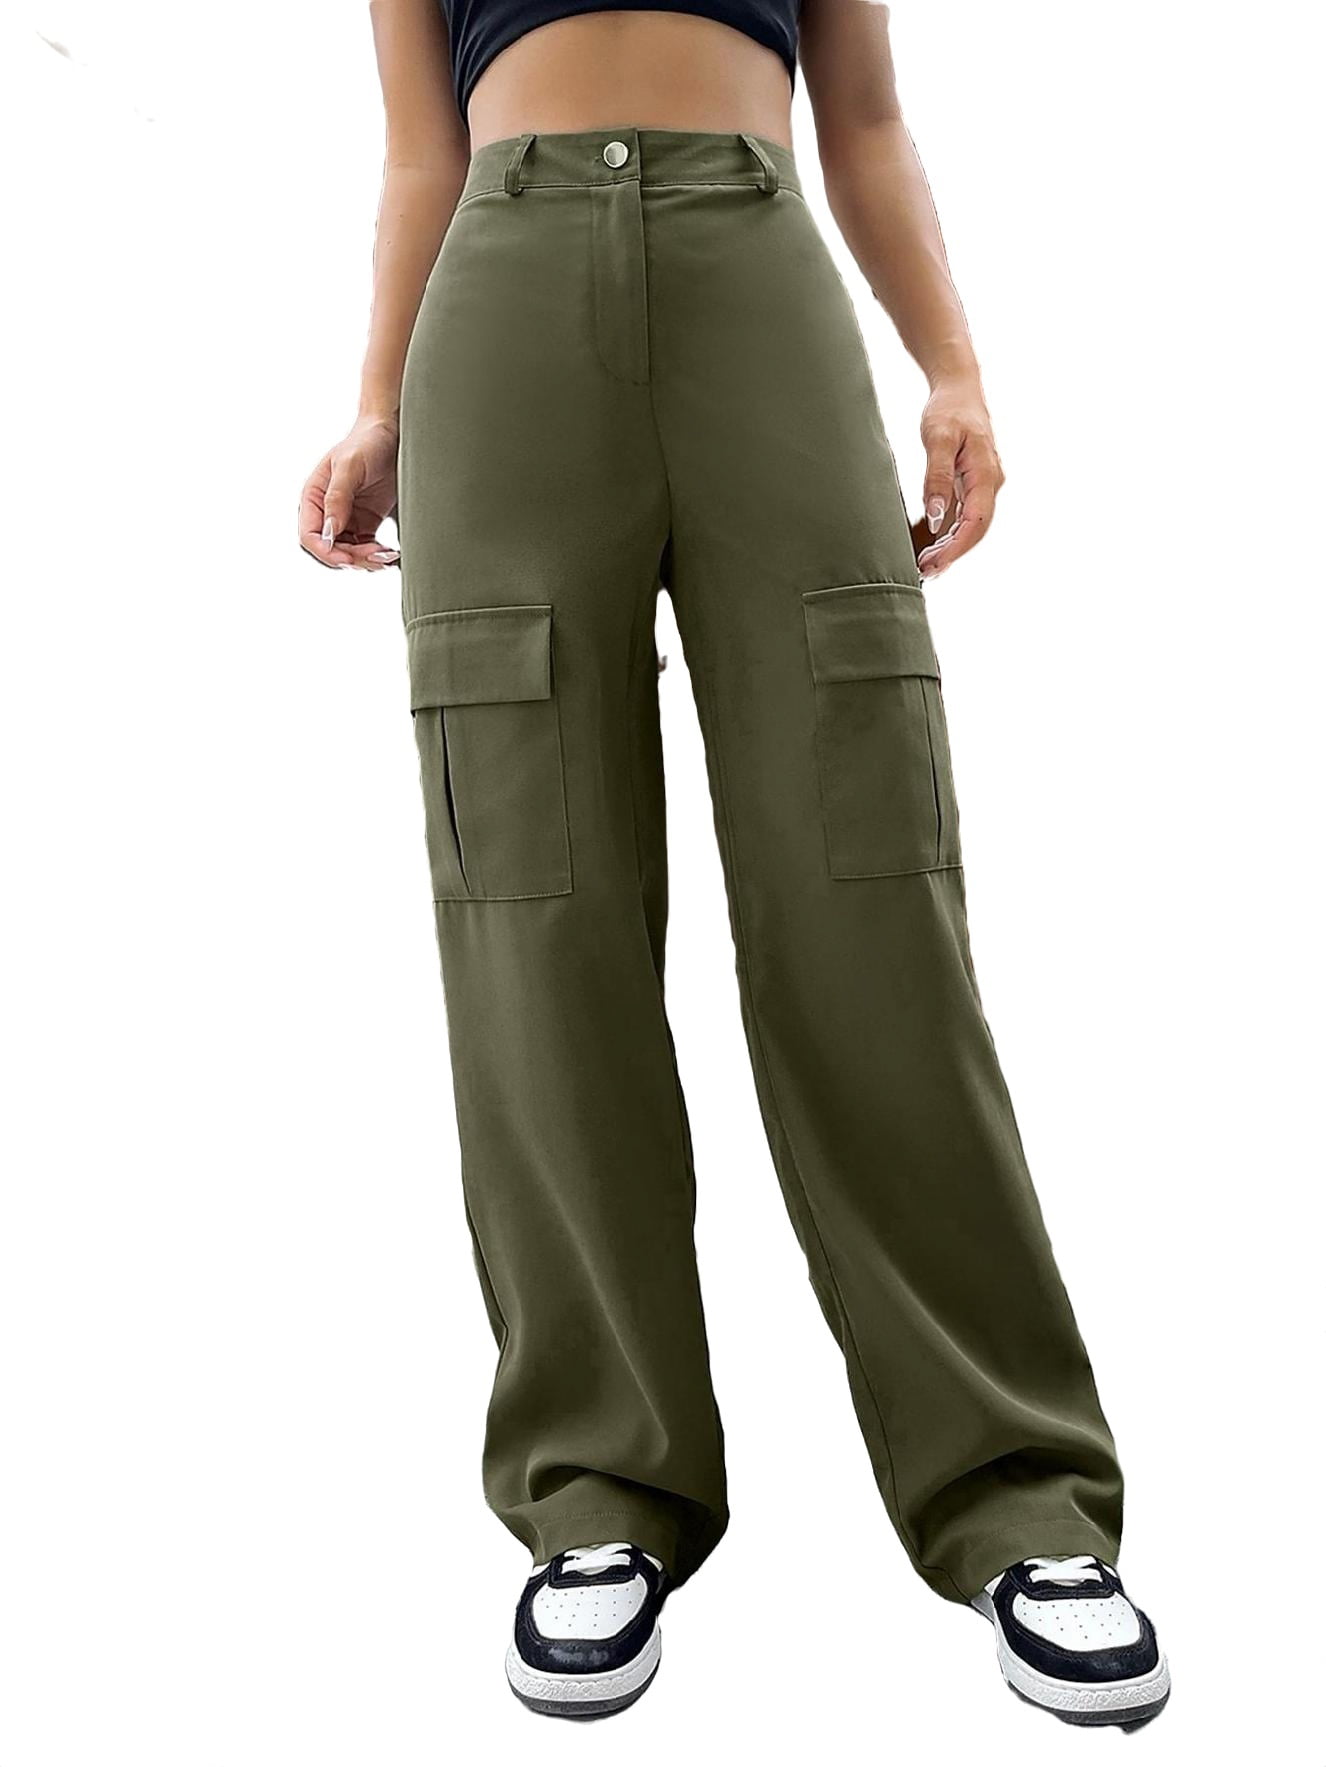 Casual Plain Cargo Pants Army Green Women's Pants (Women's) - Walmart.com